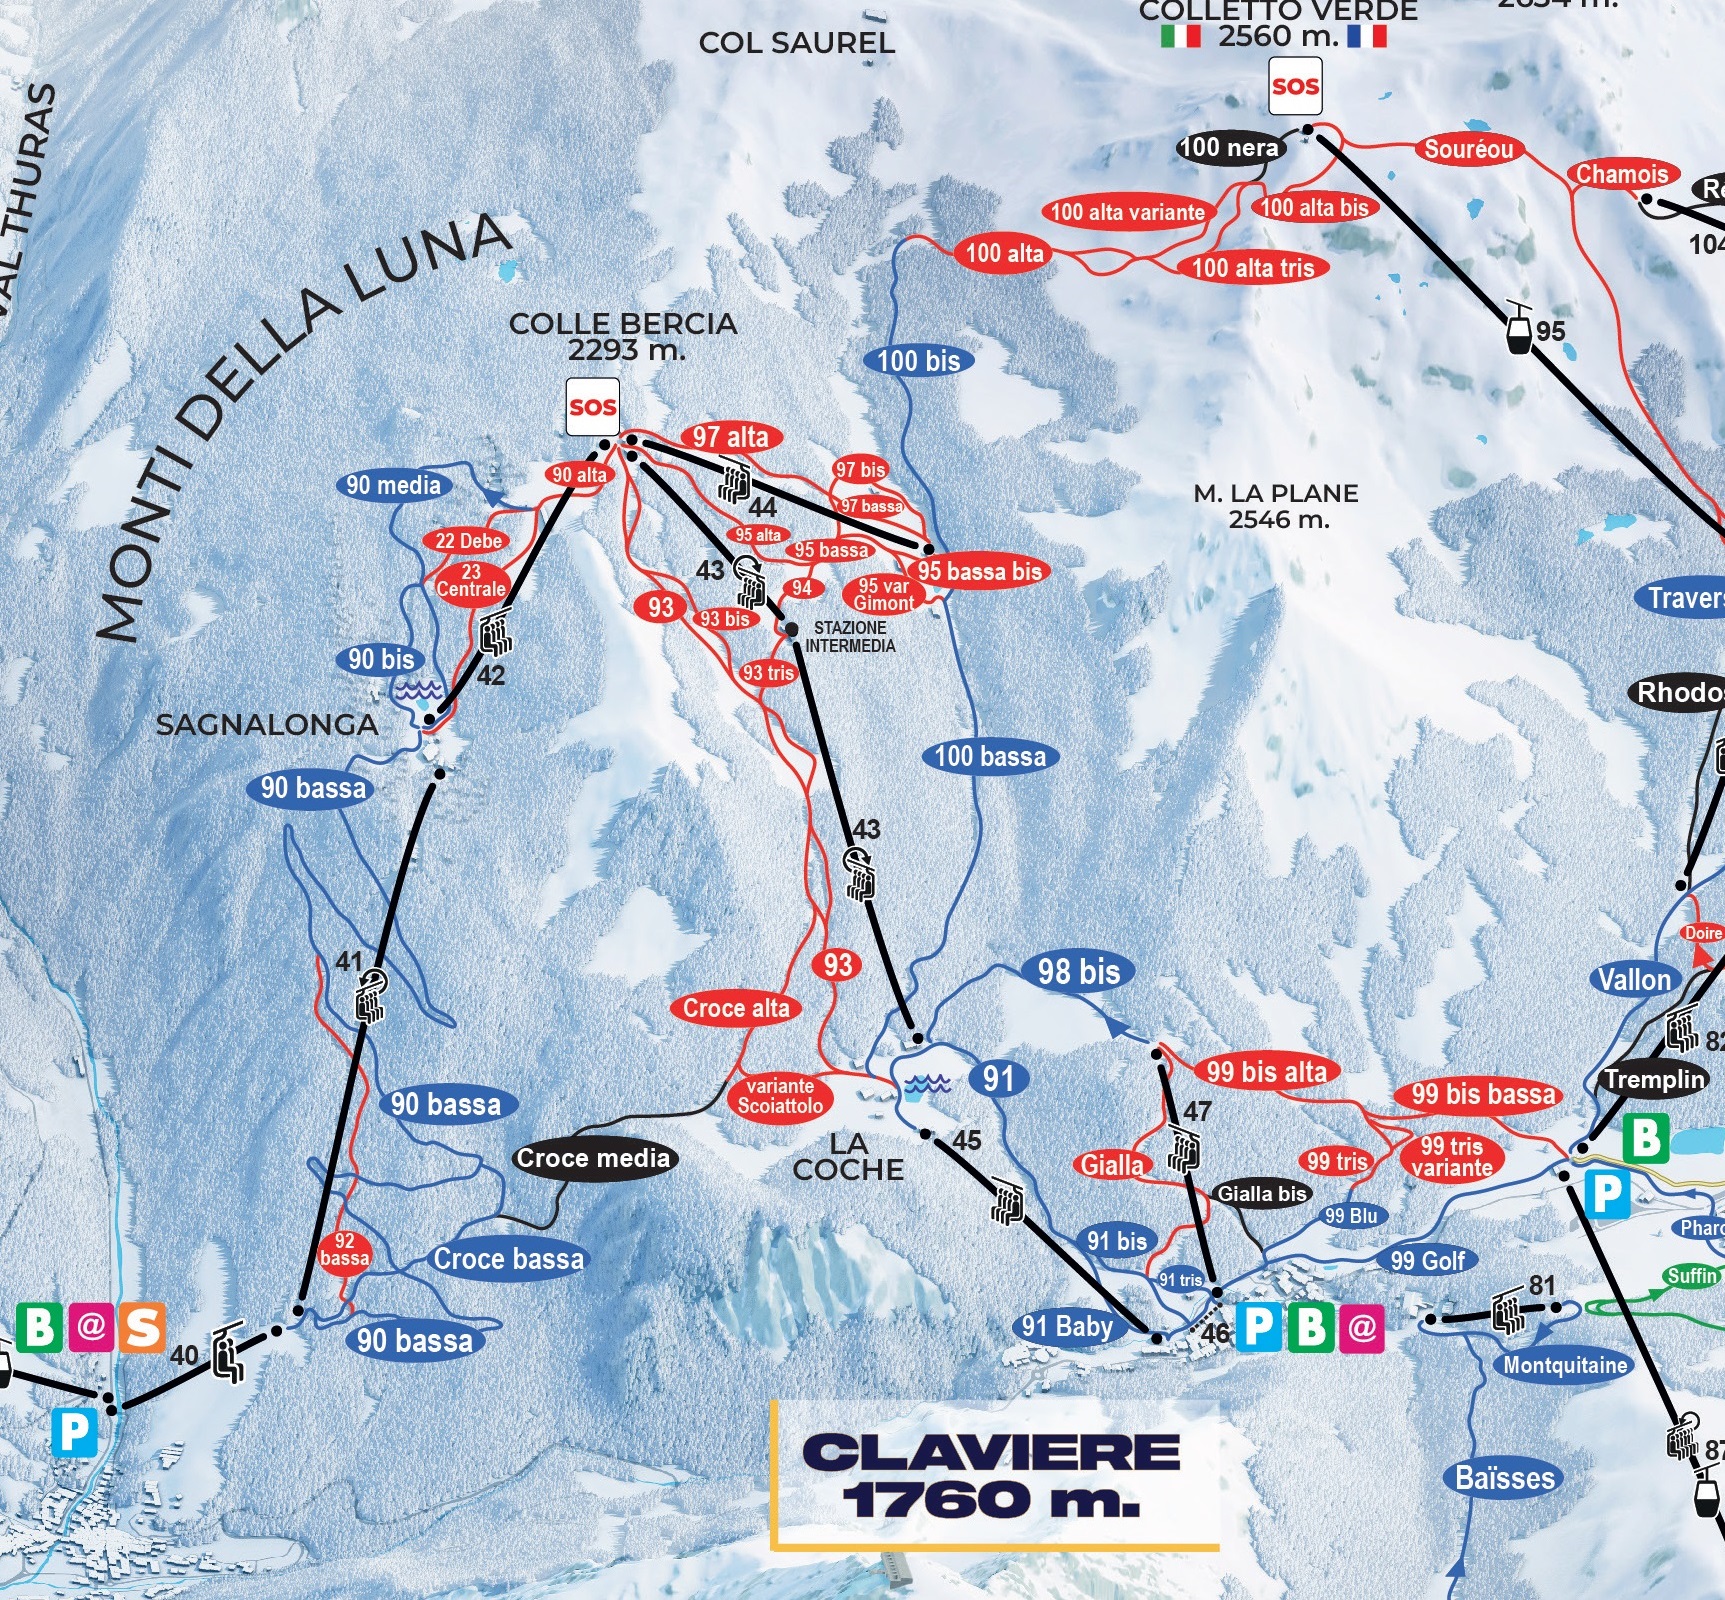 Cartina Claviere - Mappa piste sci Claviere